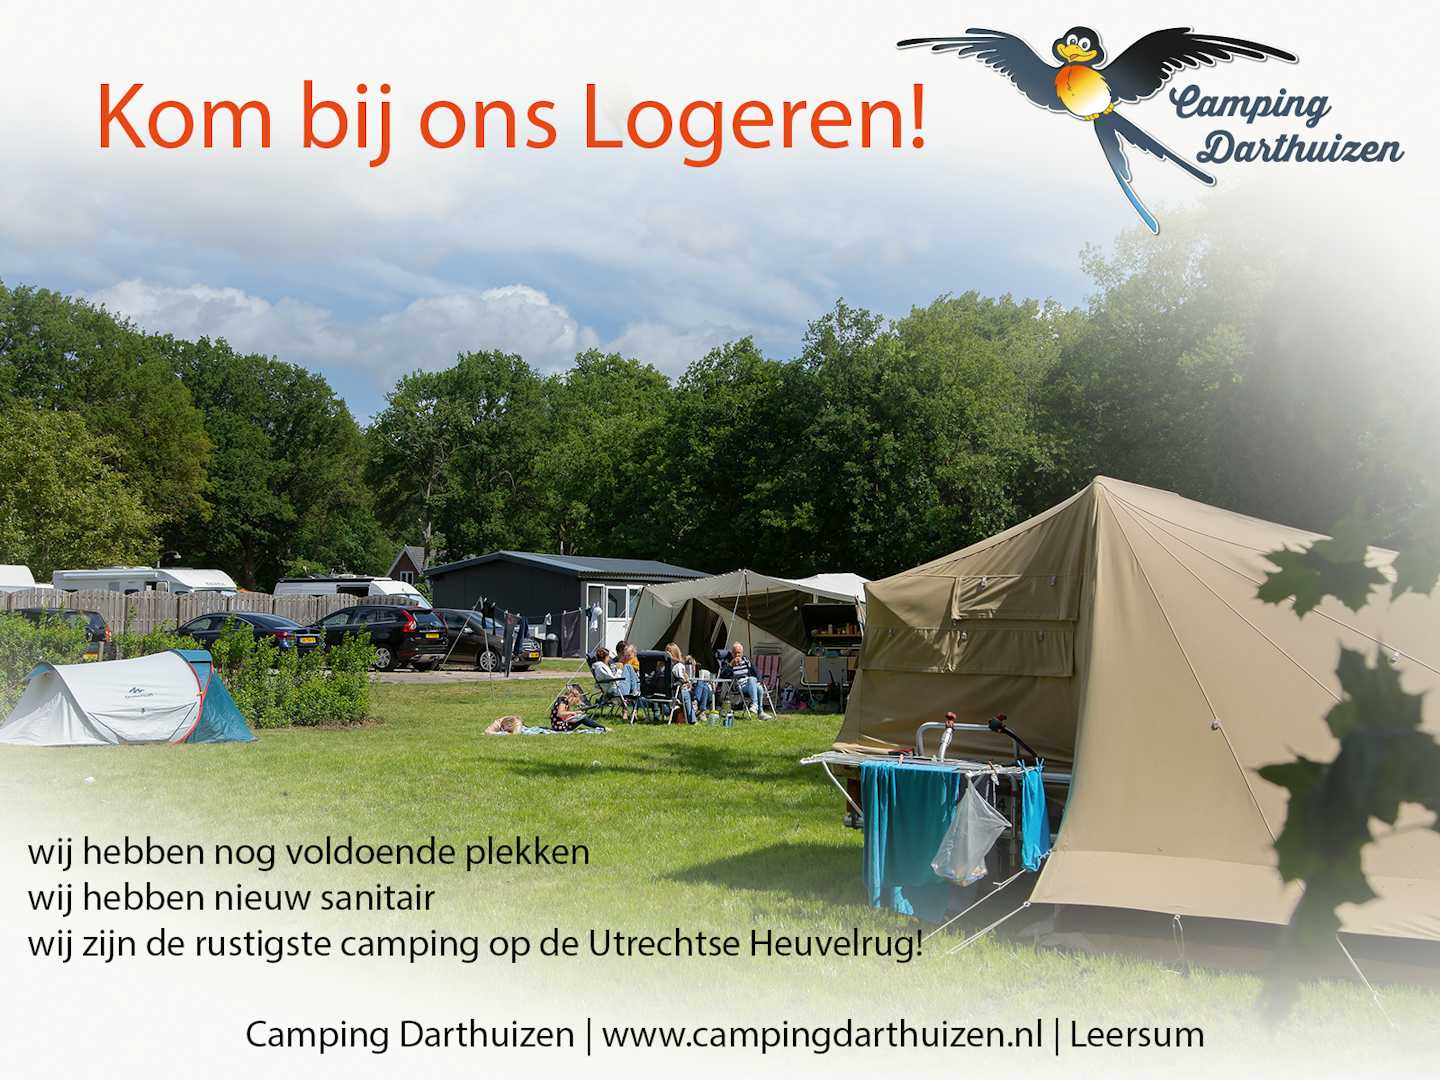 Camping Darthuizen